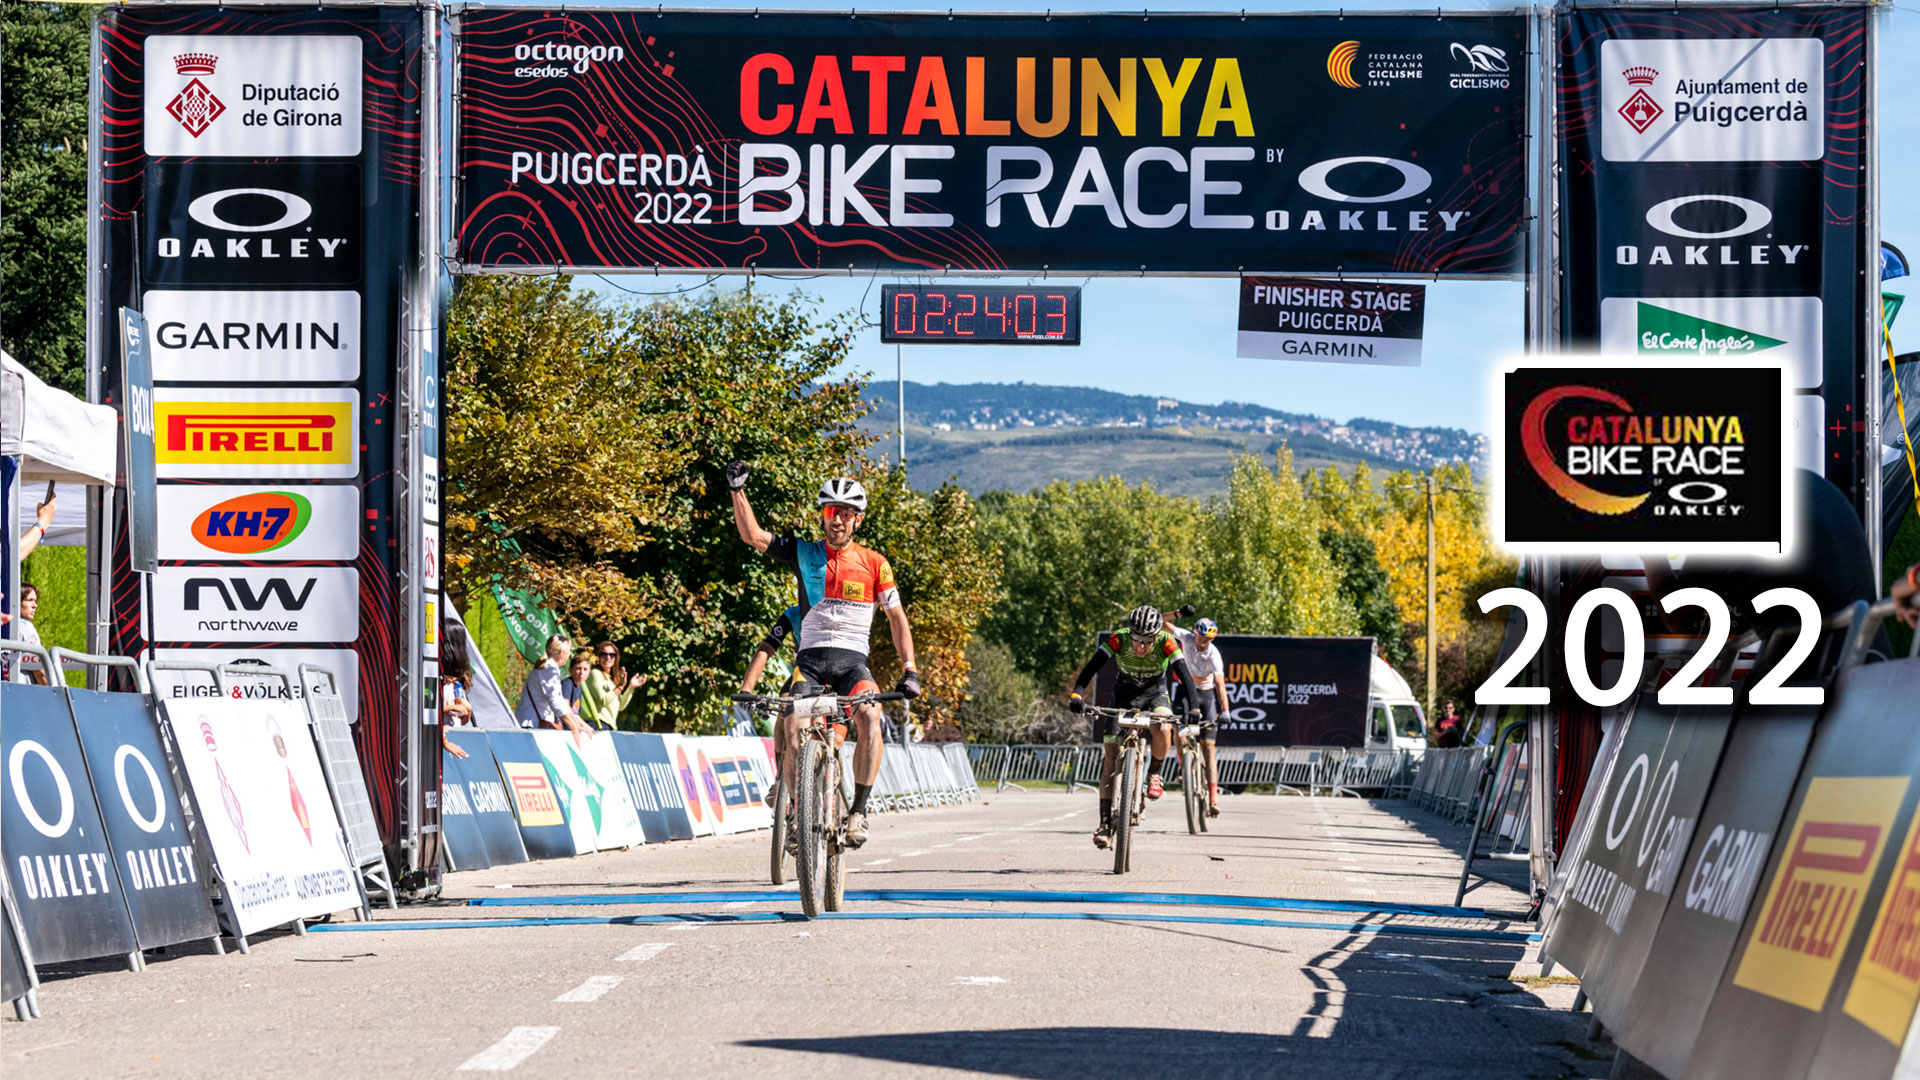  Catalunya Bike Race by OAKLEY 2022